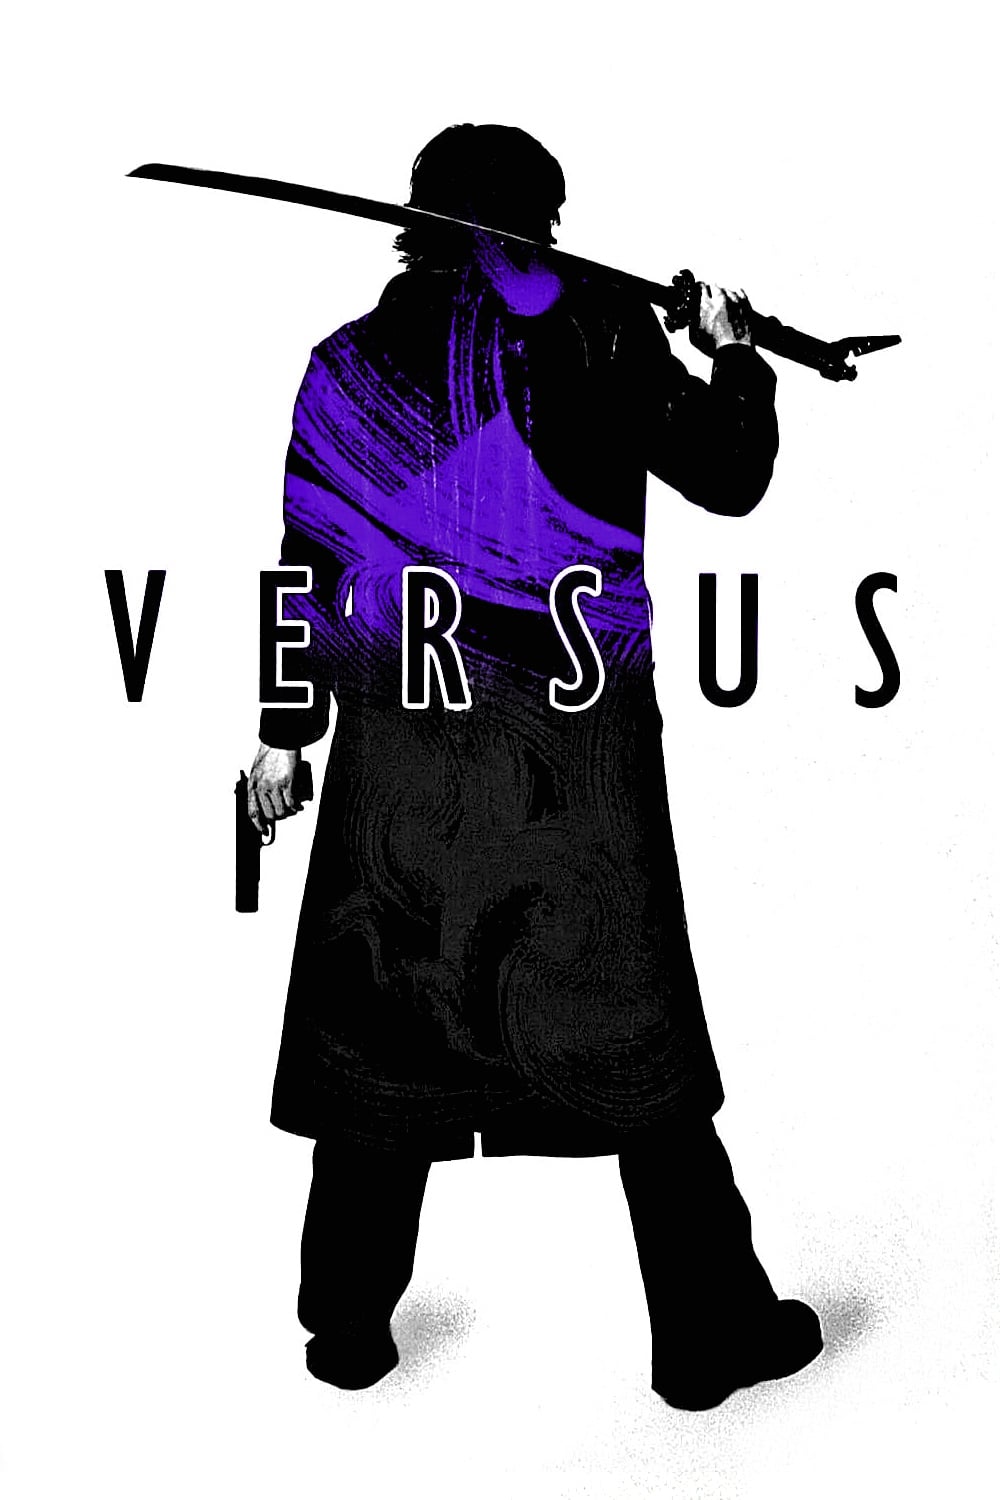 Versus [HD] (2000)